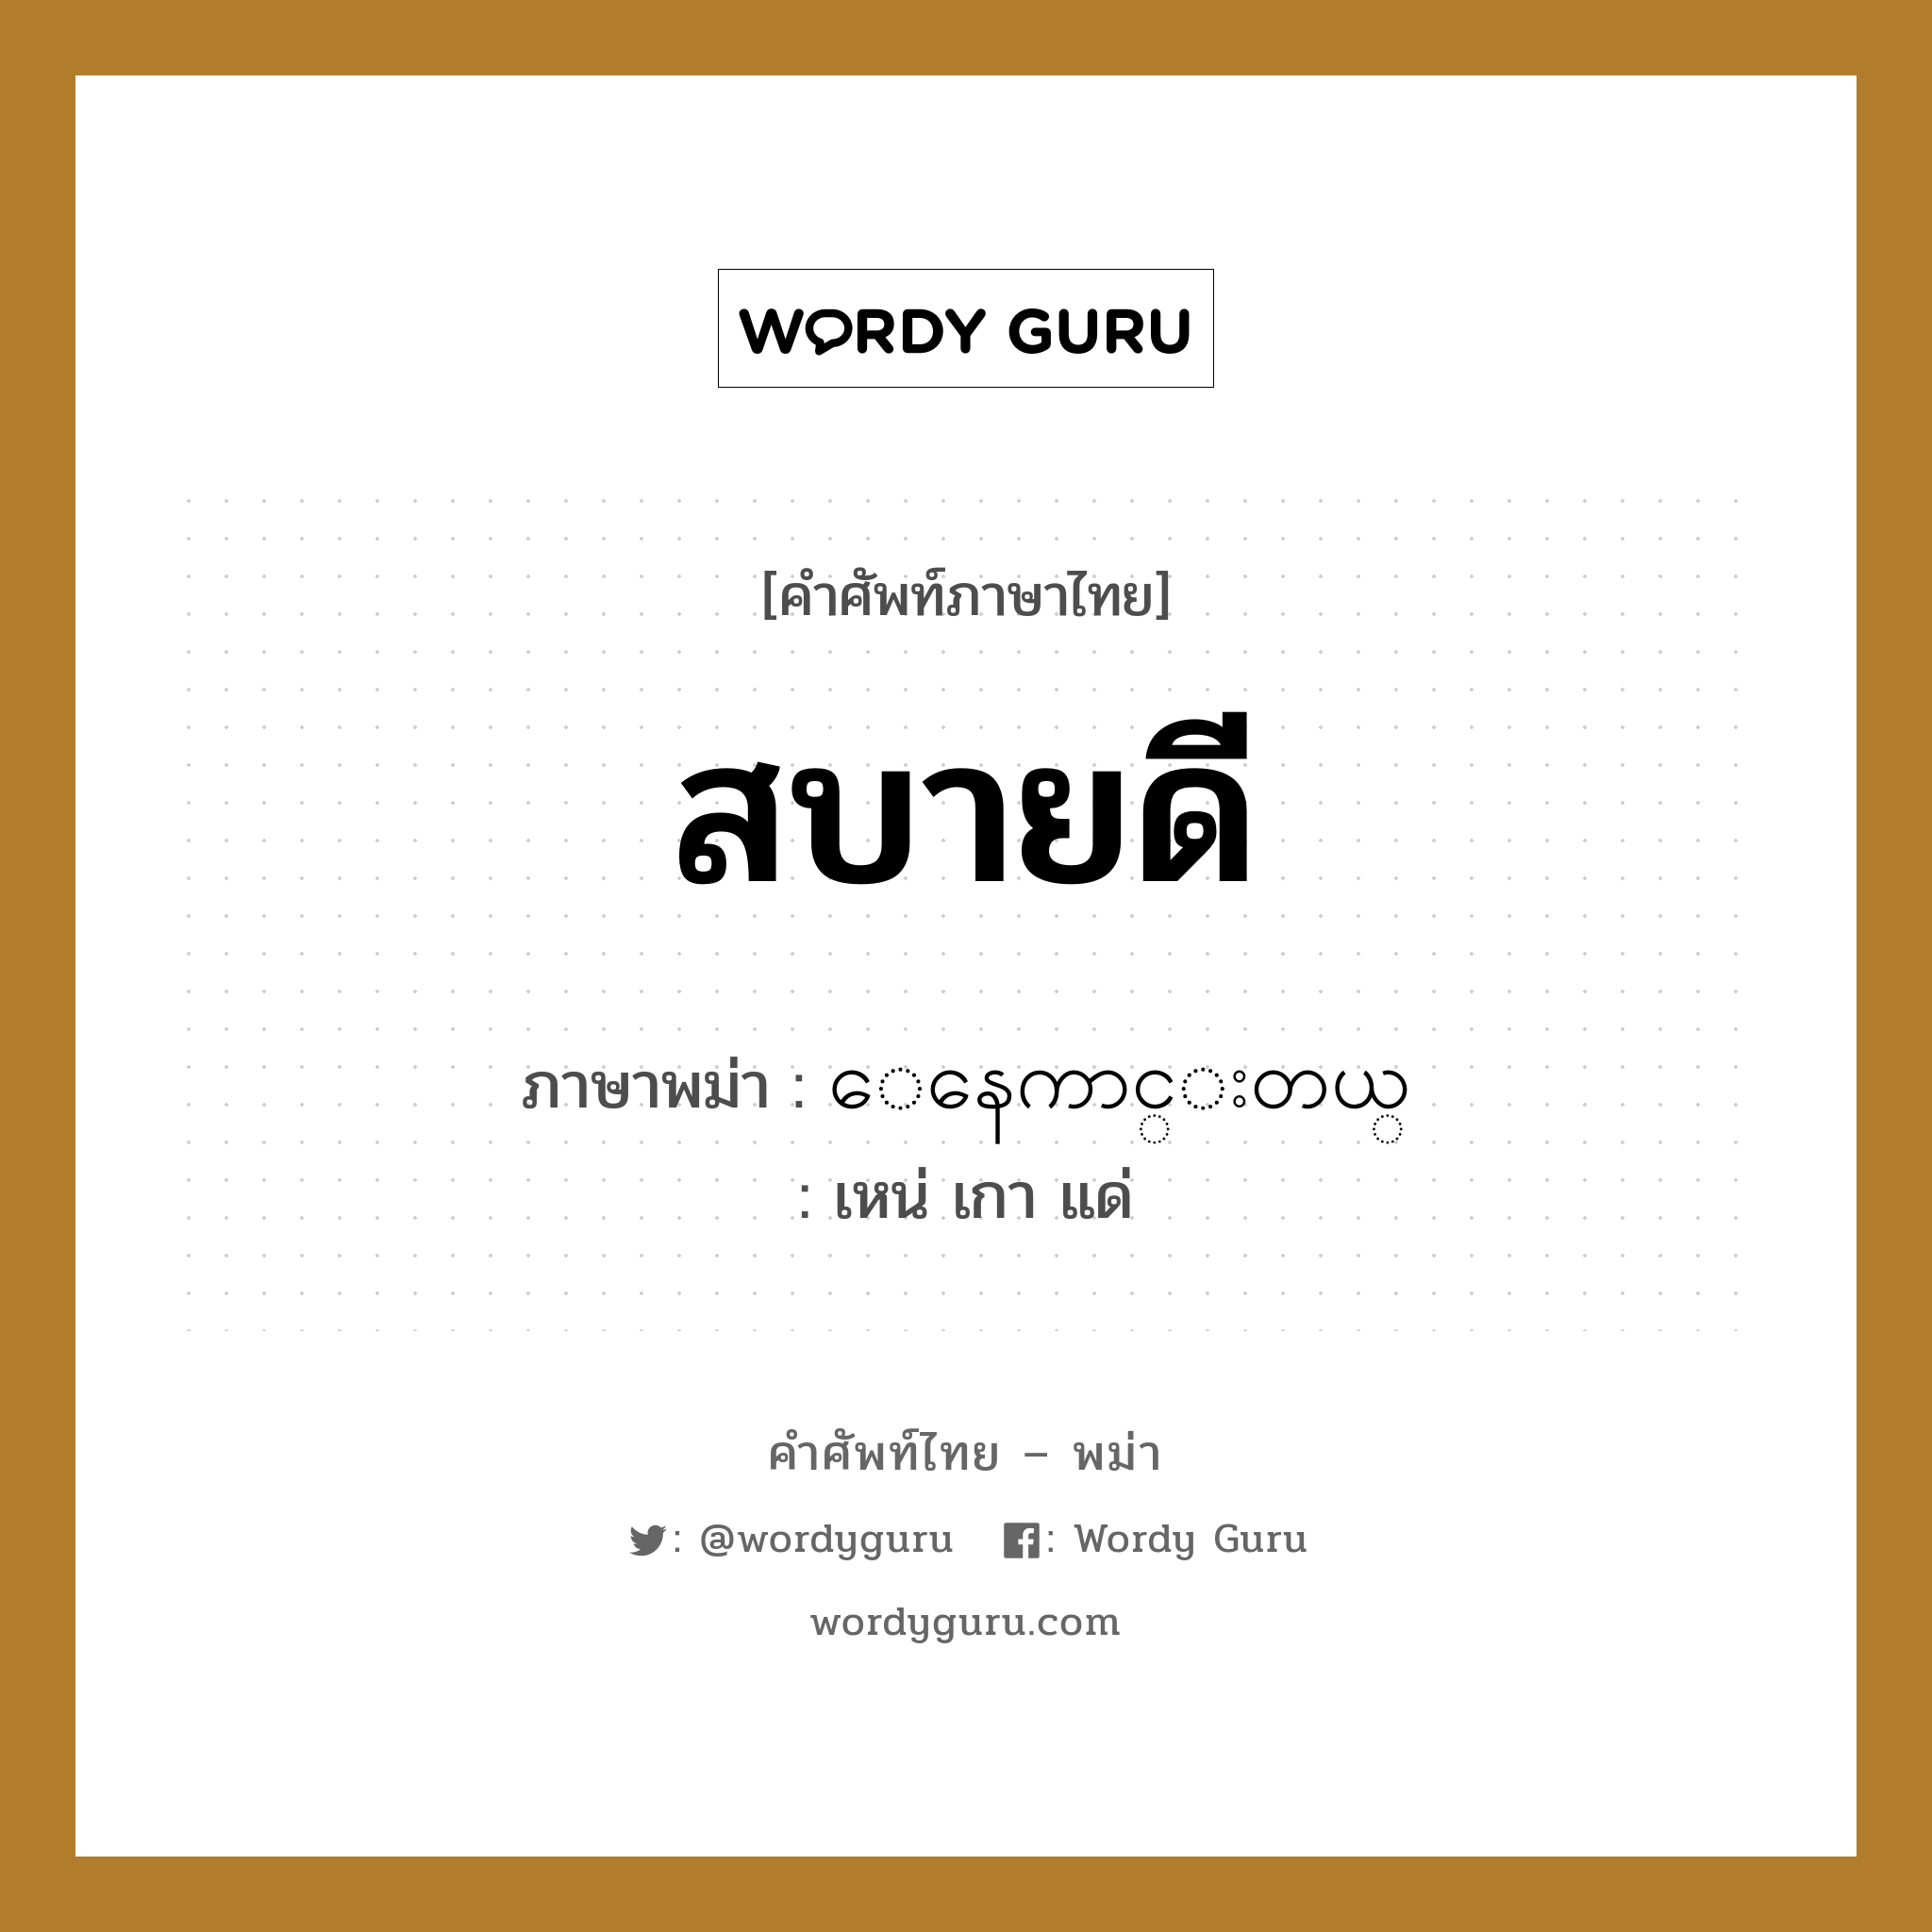 สบายดี ภาษาพม่าคืออะไร, คำศัพท์ภาษาไทย - พม่า สบายดี ภาษาพม่า ေနေကာင္းတယ္ หมวด หมวดโรคและยารักษา เหน่ เกา แด่ หมวด หมวดโรคและยารักษา